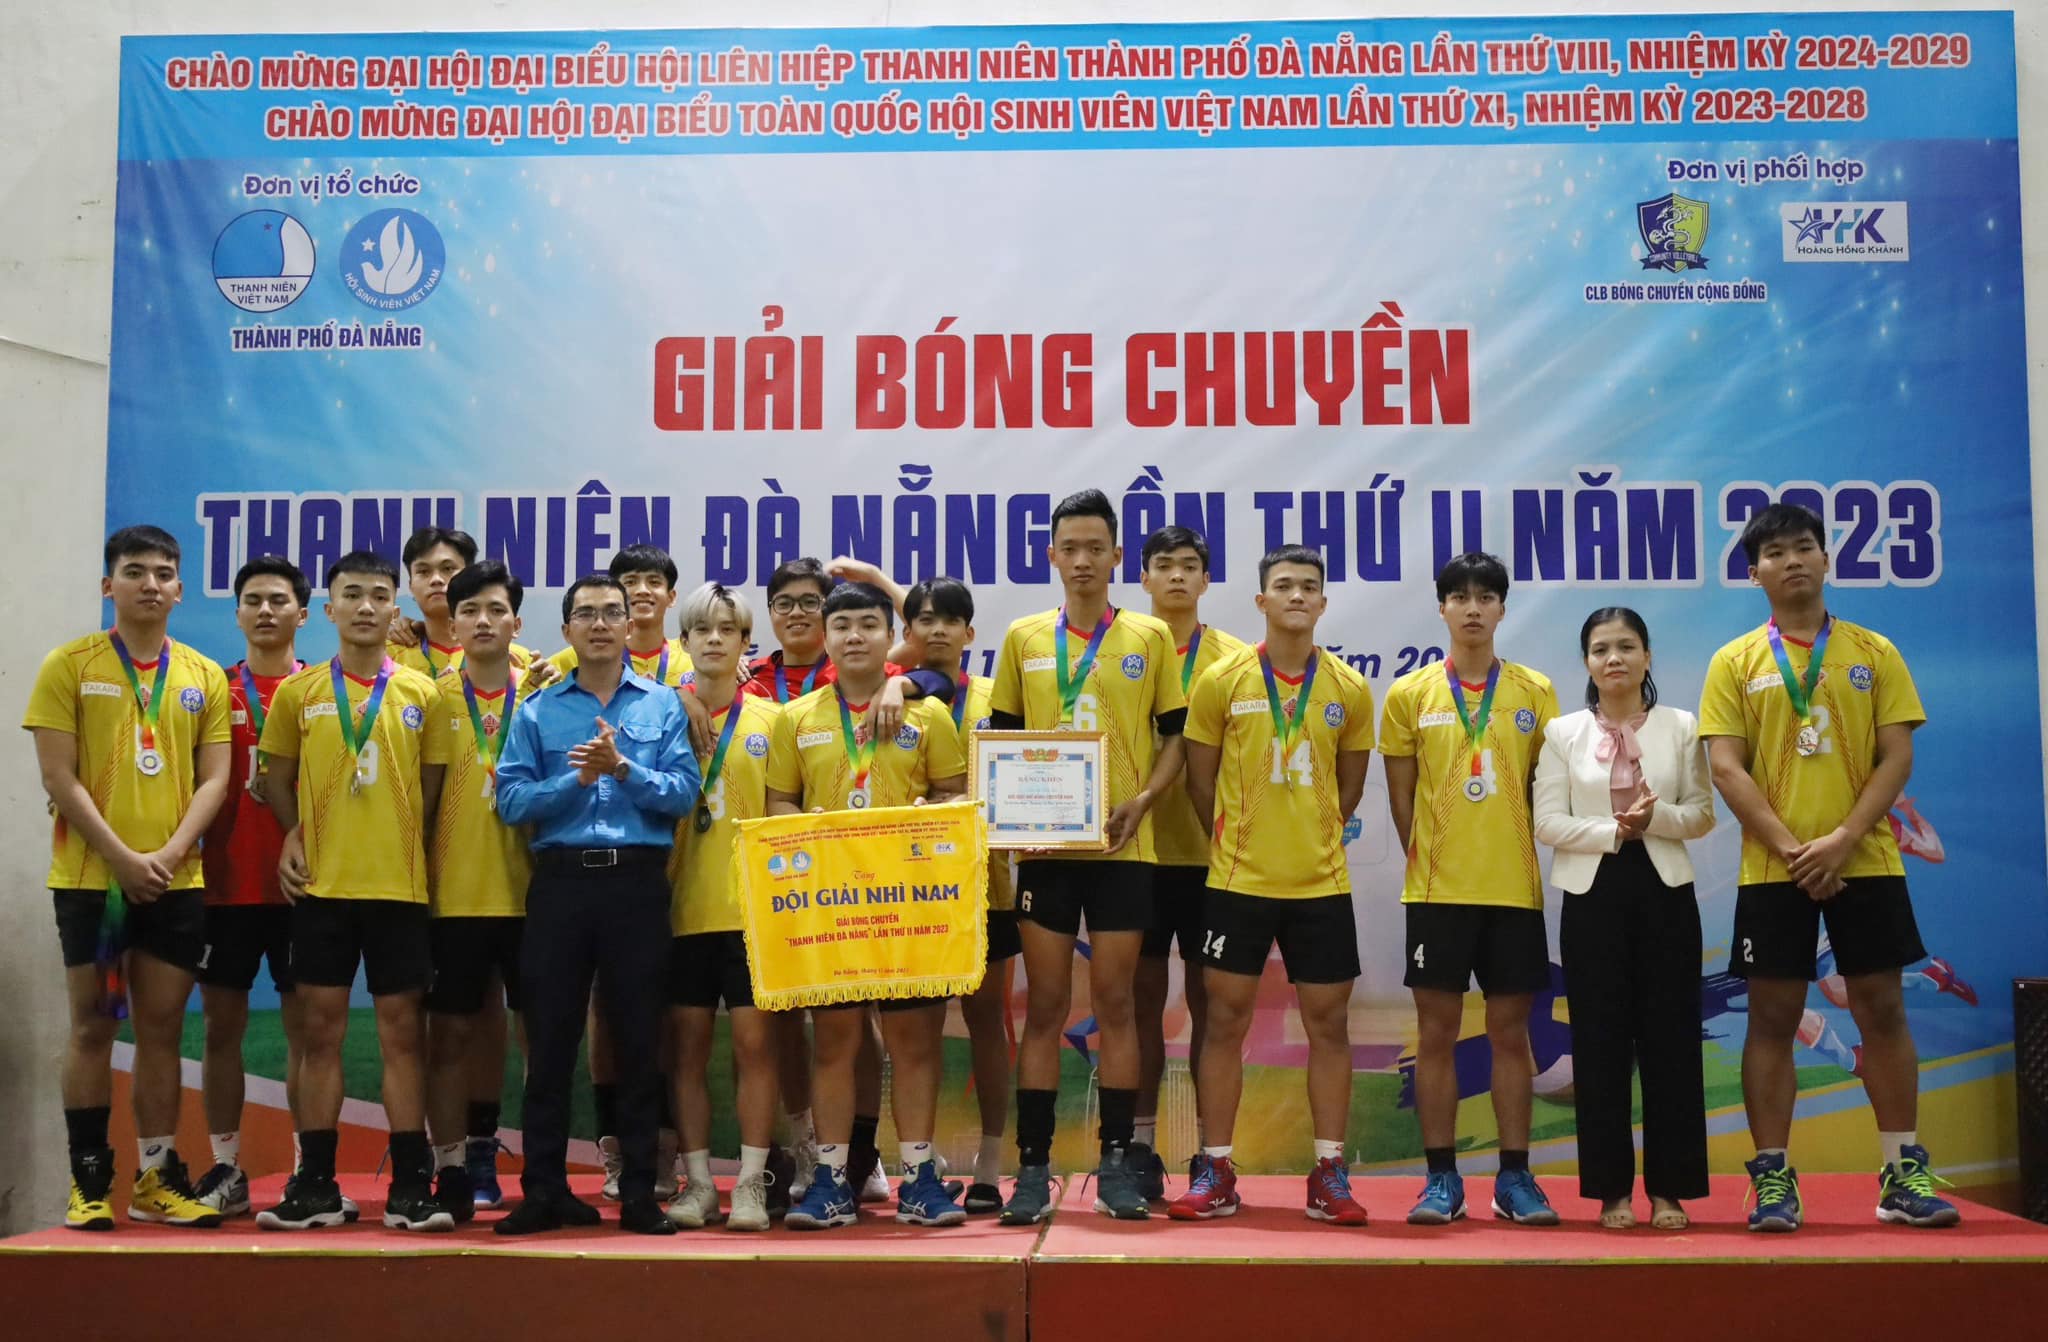 Trường Đại học Kiến trúc Đà Nẵng đã tiến thẳng vào vòng chung kết Giải bóng chuyền thanh niên Đà Nẵng lần thứ II năm 2023